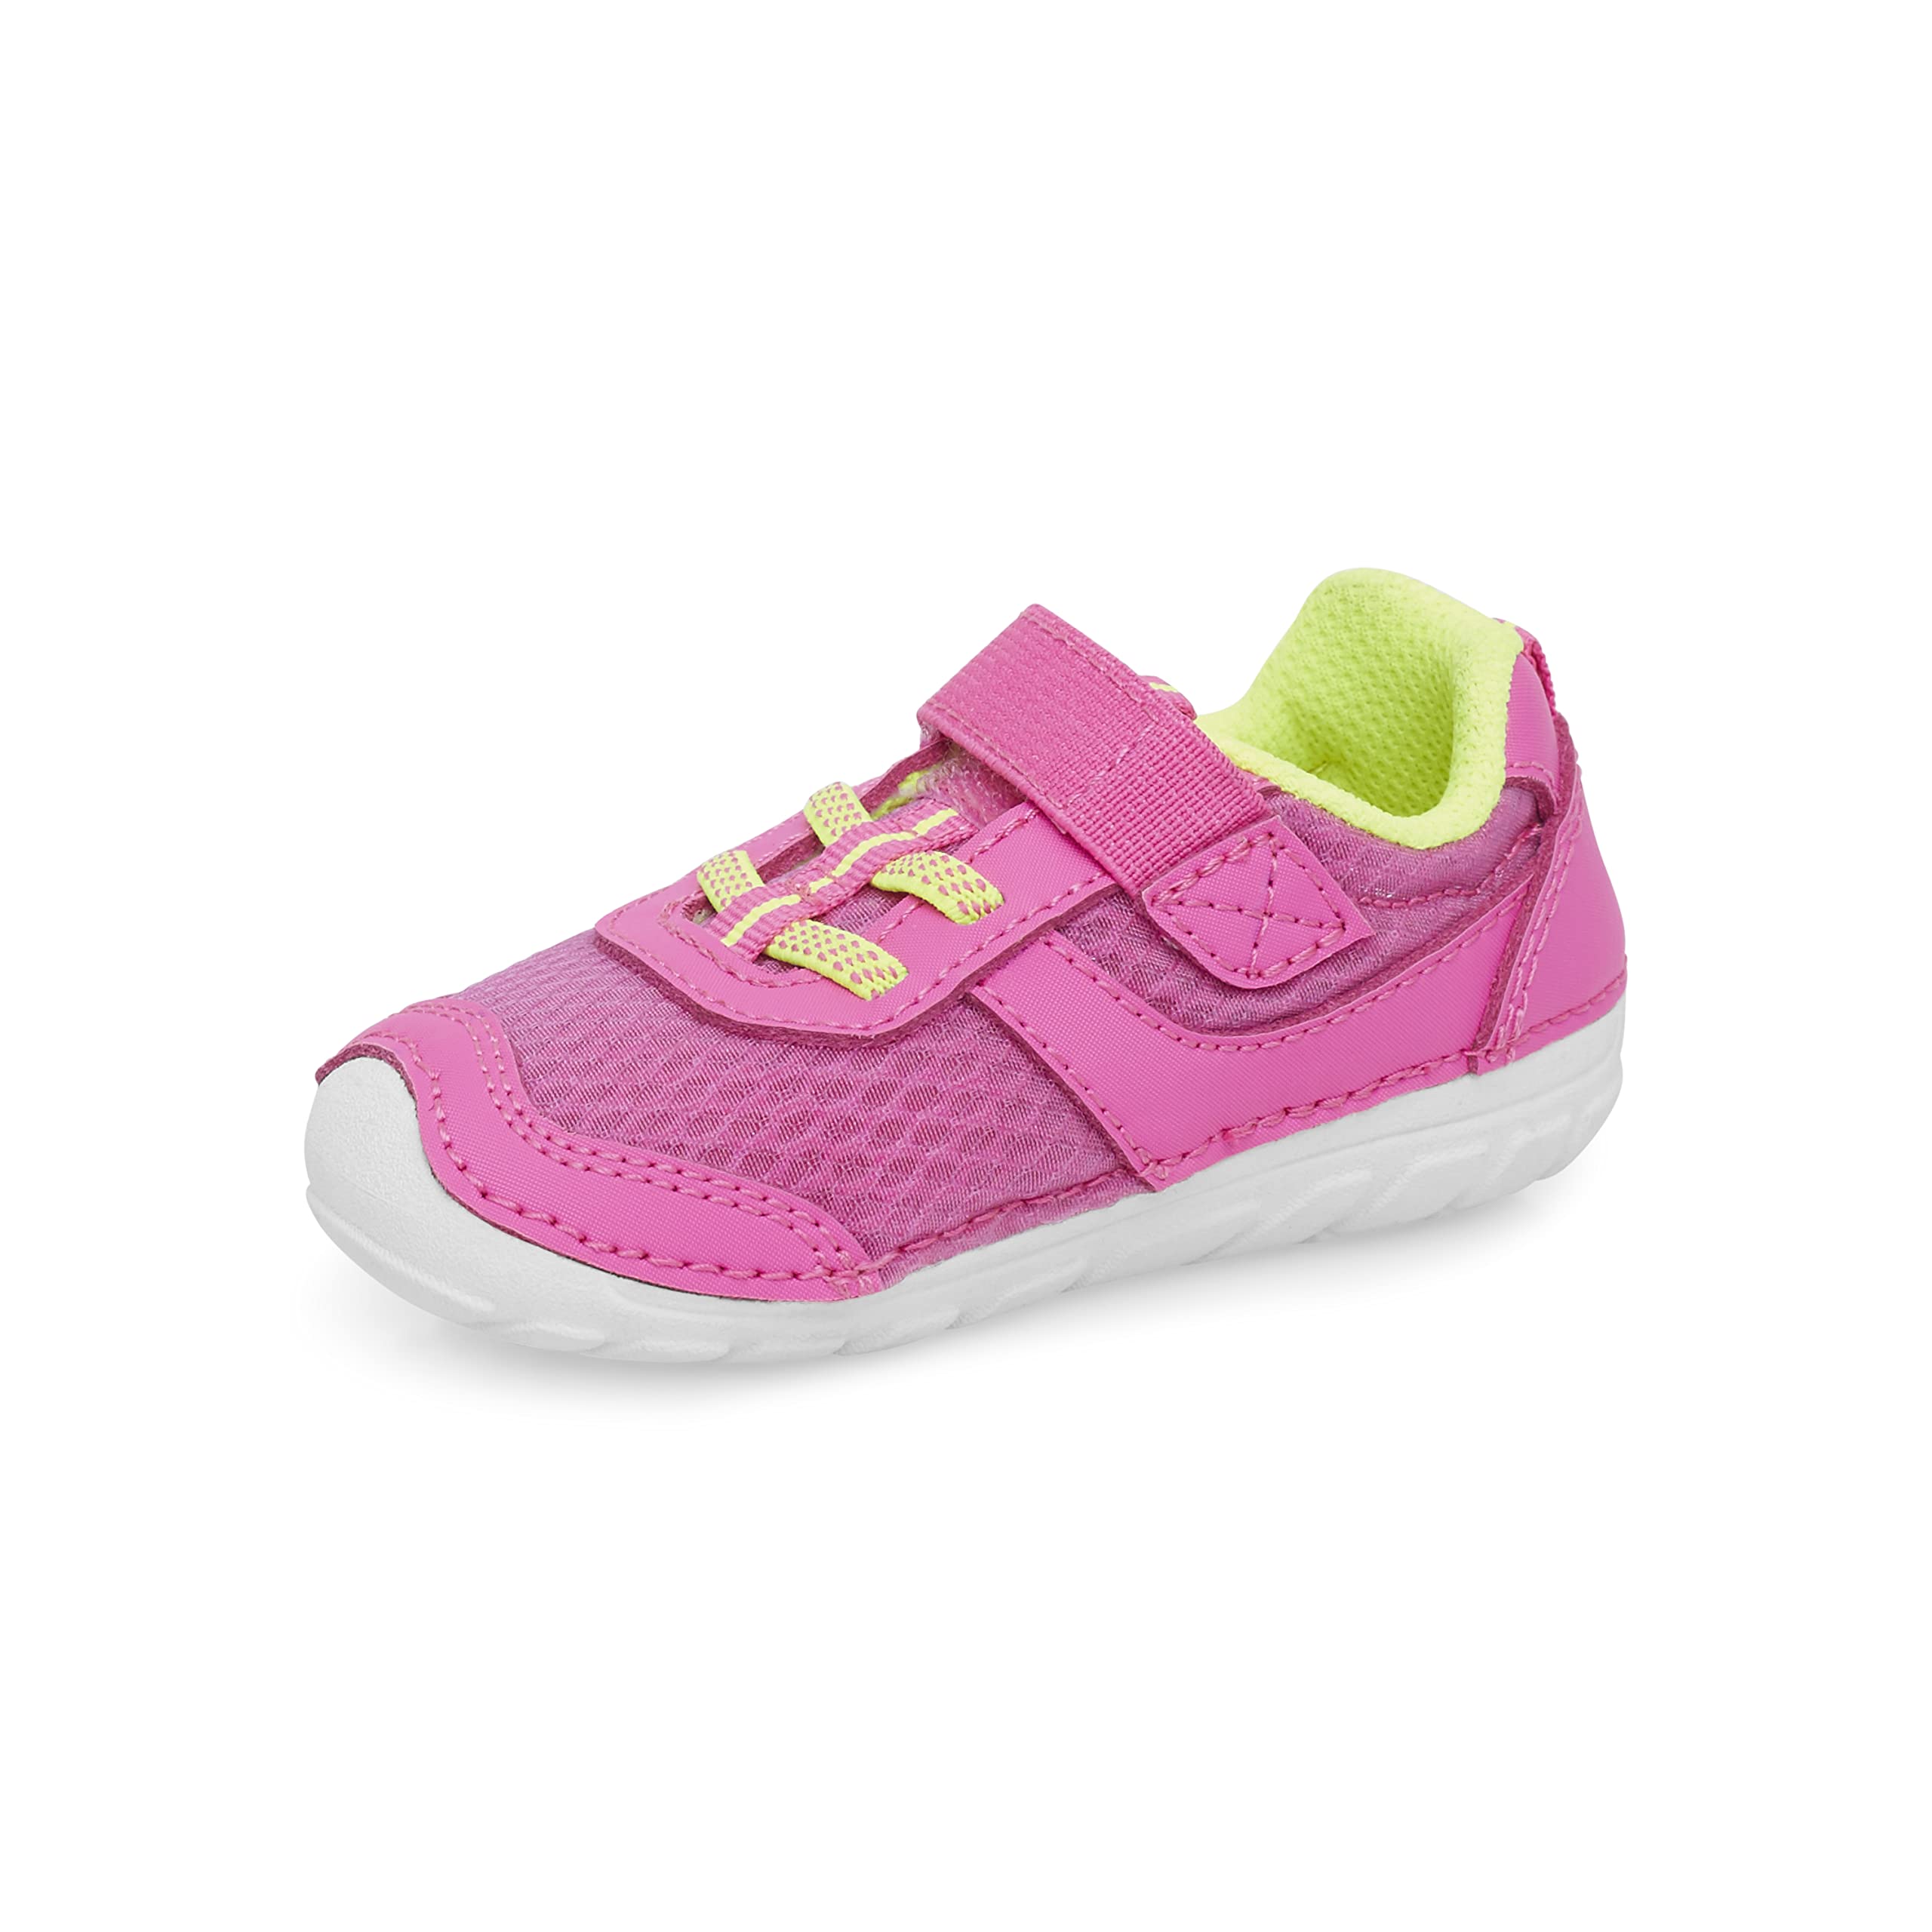 Stride Rite Unisex-Child Soft Motion Zips Runner Sneaker